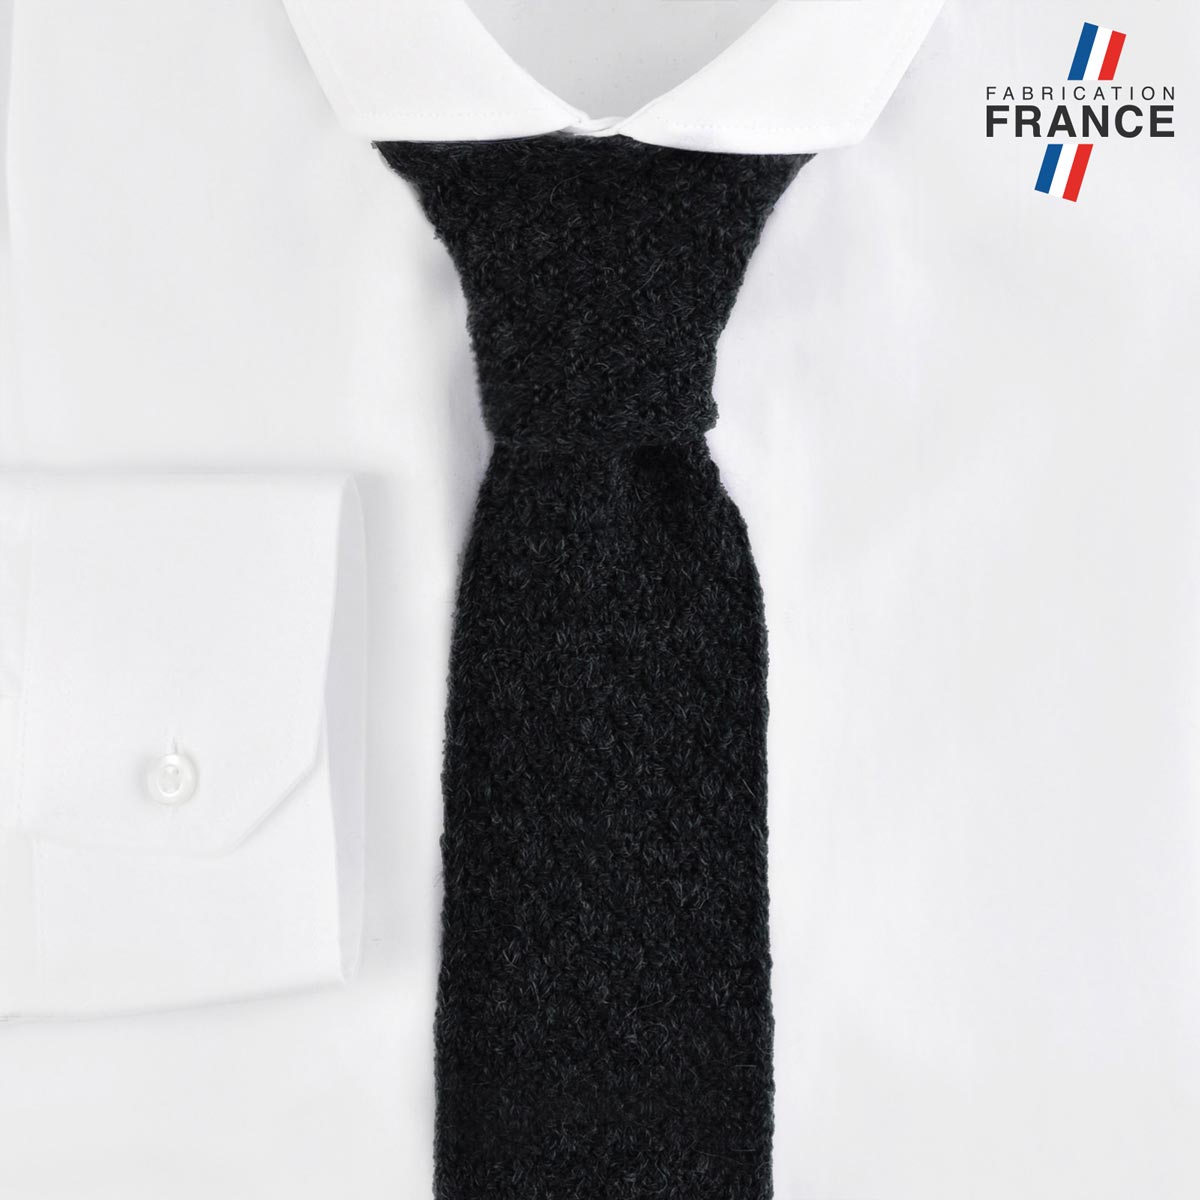 CV-00466_F12-2FR_Cravate-tricot-noire-fabrication-francaise